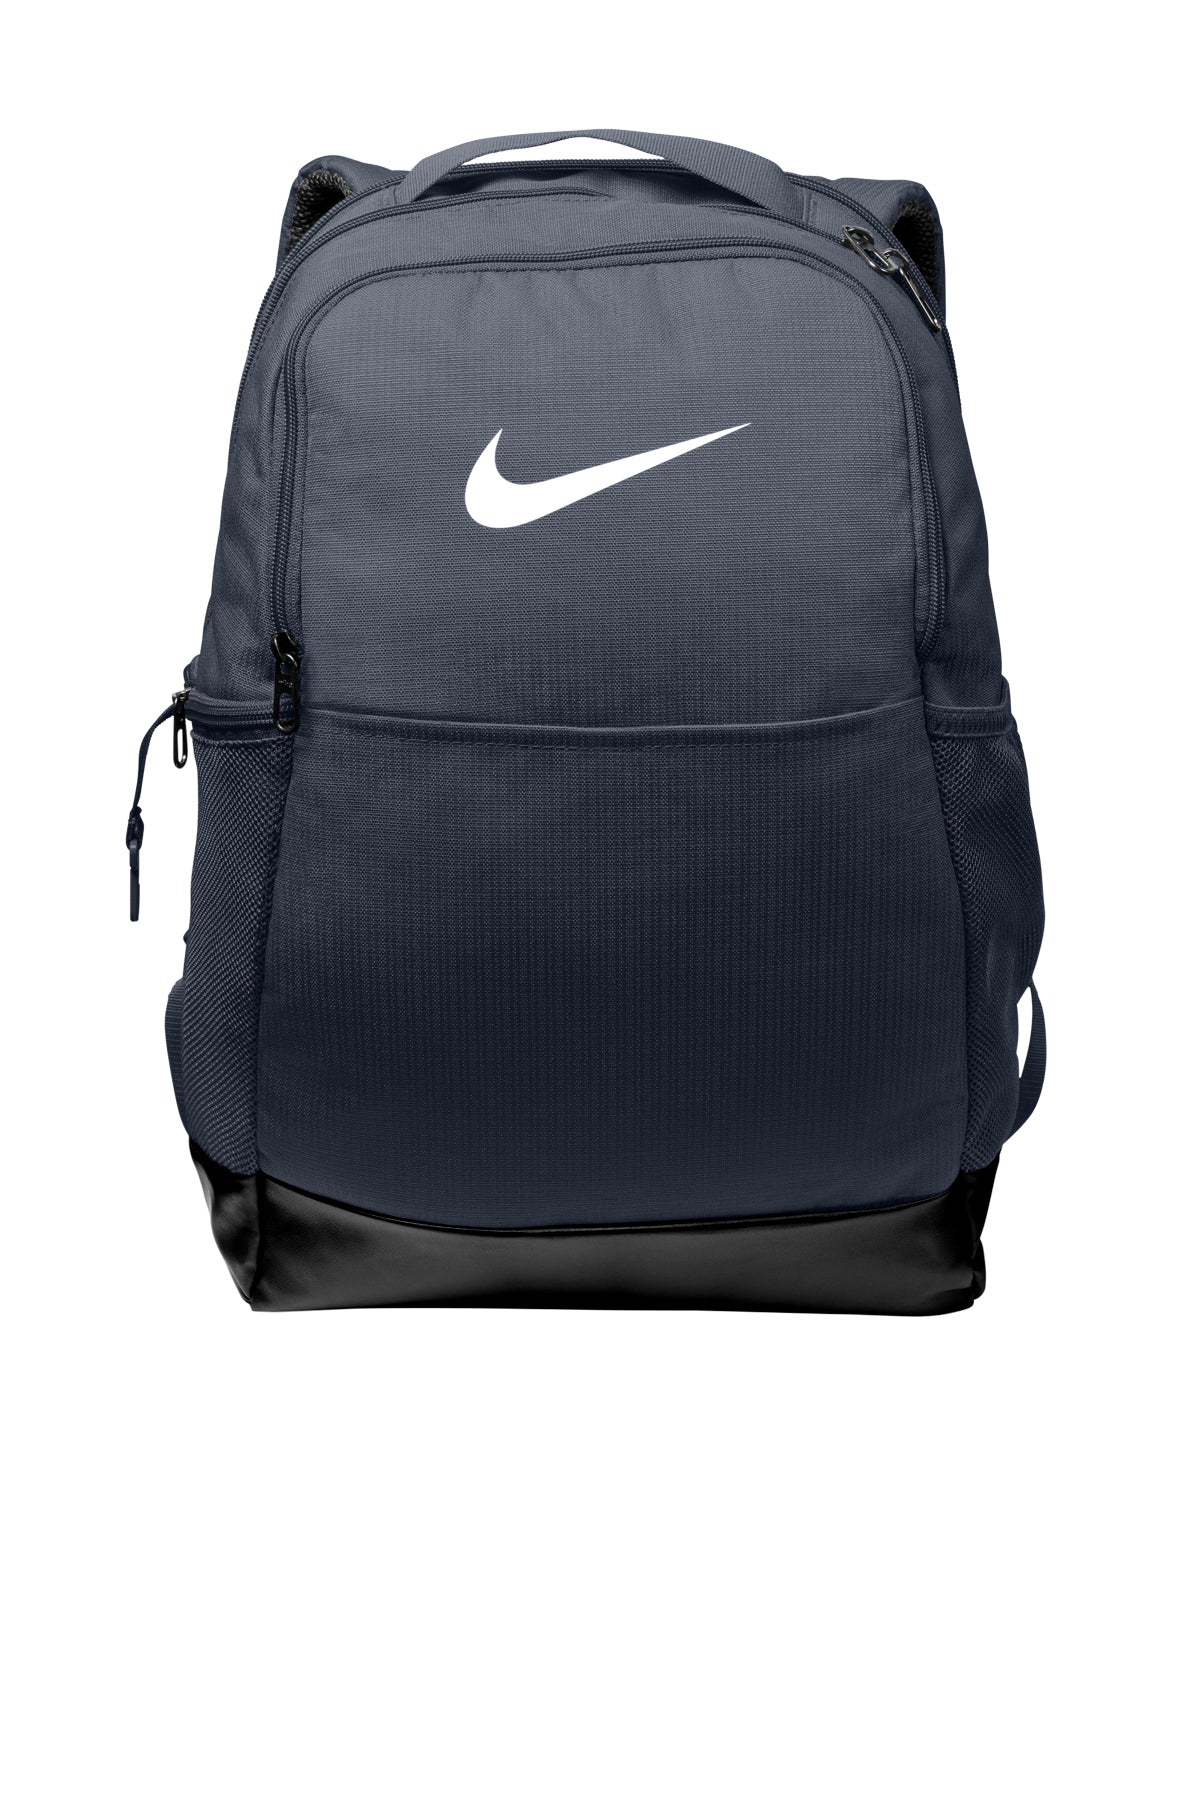 https://www.yhd2016.com/cdn/shop/products/Nike_bag_navy_1_1445x.jpg?v=1675280287